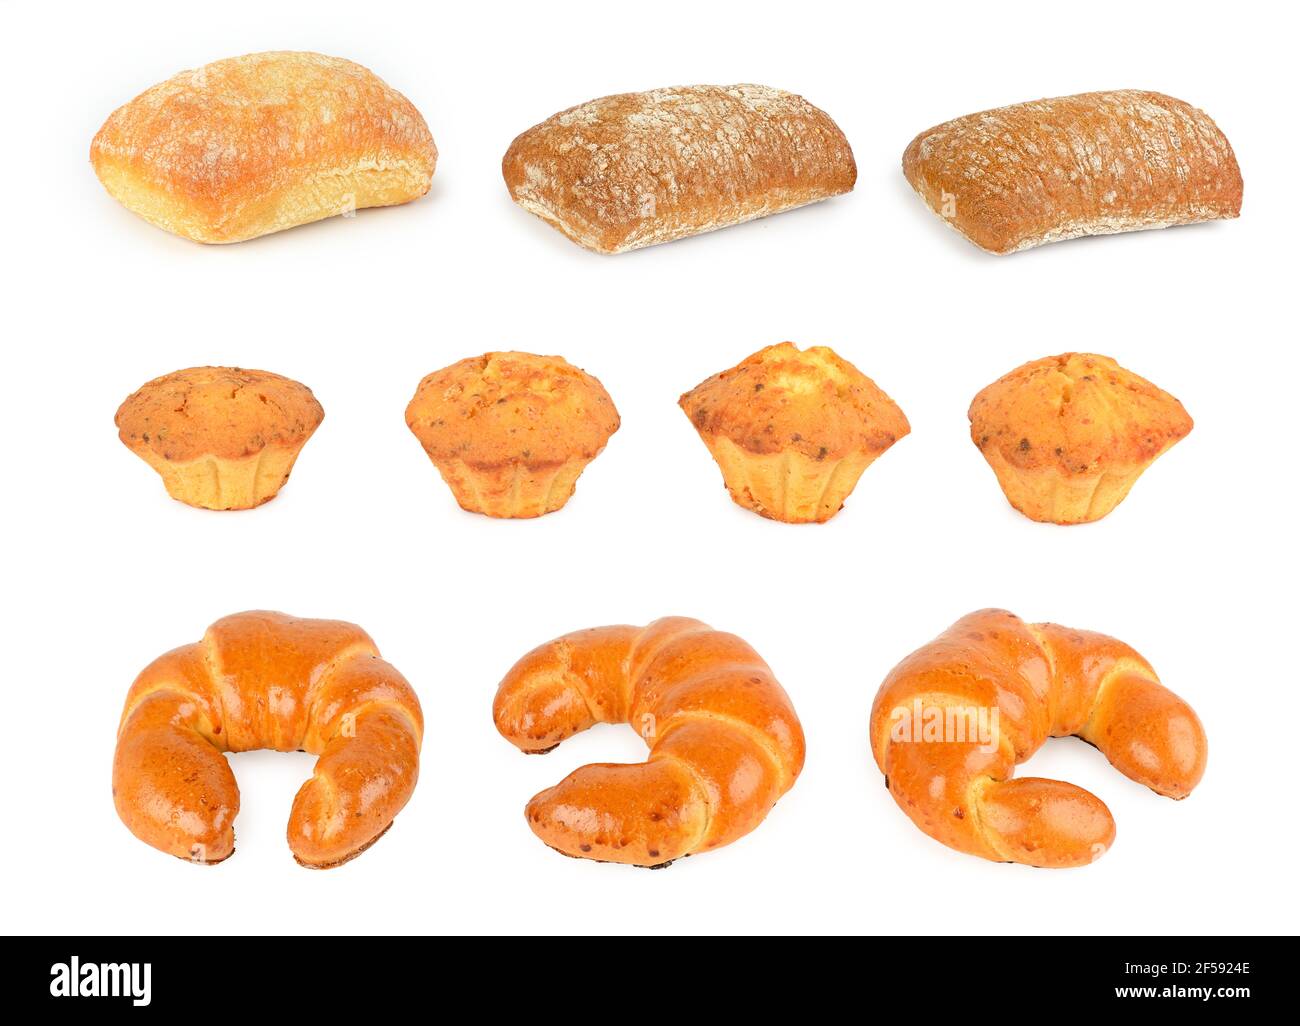 Placez des produits de pain frais (petits pains, croissants, ciabatta) isolés sur fond blanc Banque D'Images